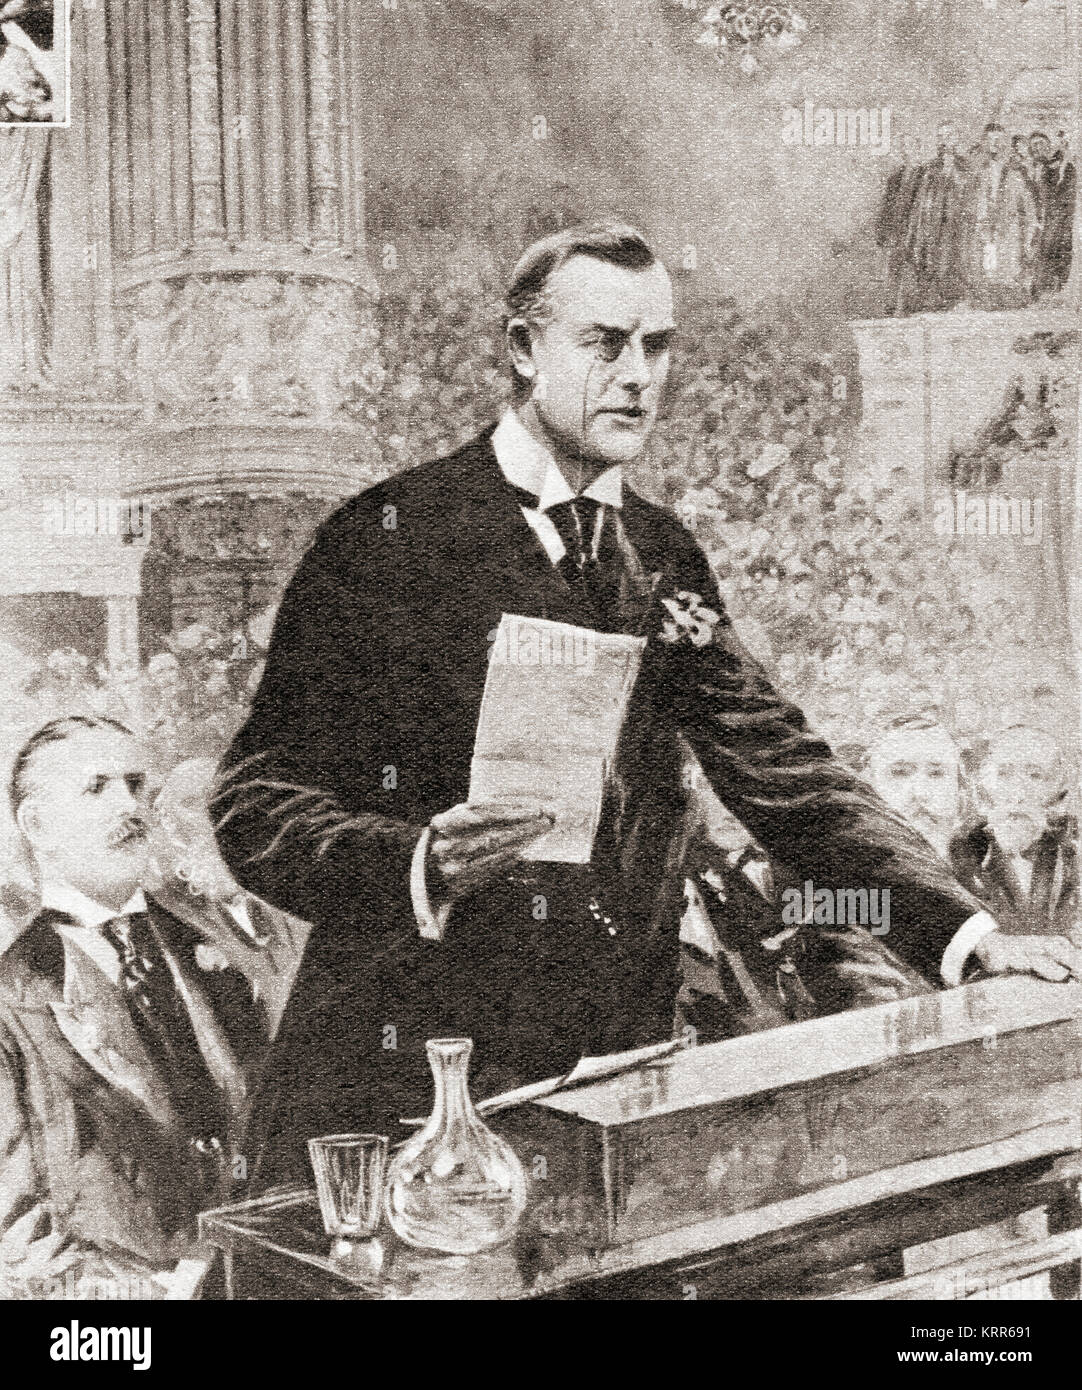 Le discours inaugural de Joseph Chamberlain à Glasgow, Écosse, 1903. Joseph Chamberlain, 1836 -1914. Homme d'État britannique qui a d'abord un Parti libéral radical, puis, après s'opposant à la home rule pour l'Irlande, un parti unioniste. Banque D'Images